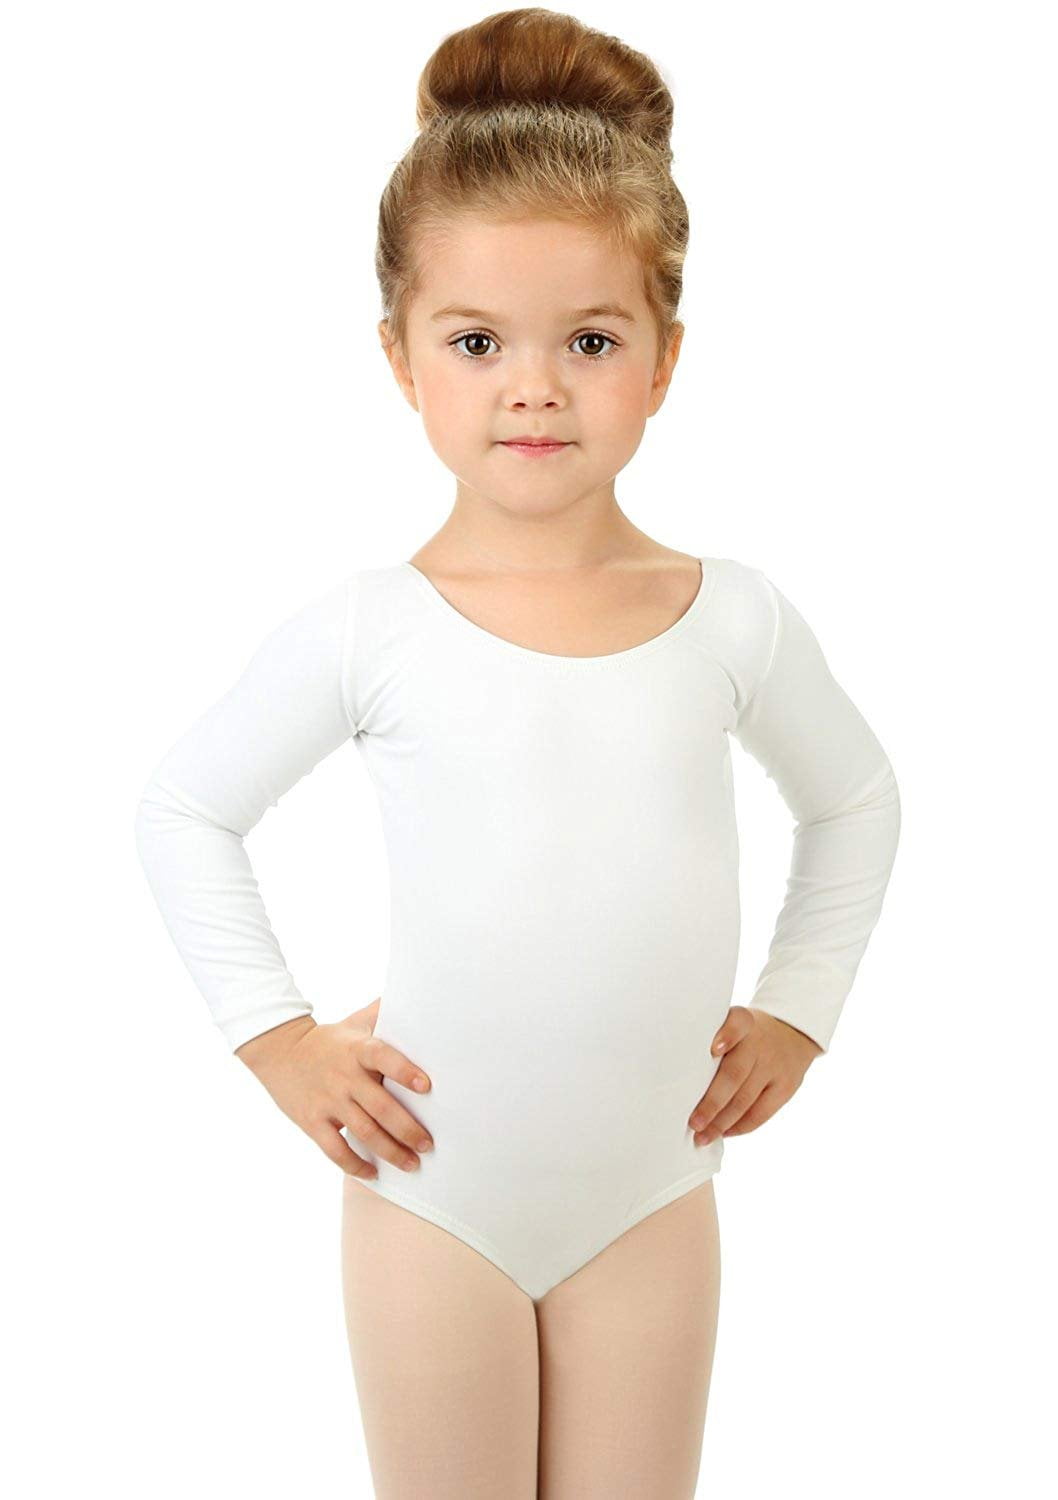 Details about   Kids Girls Gym Ballet Dance Leotard U Neck Jumpsuits Dancewear Bodycon Bodysuit